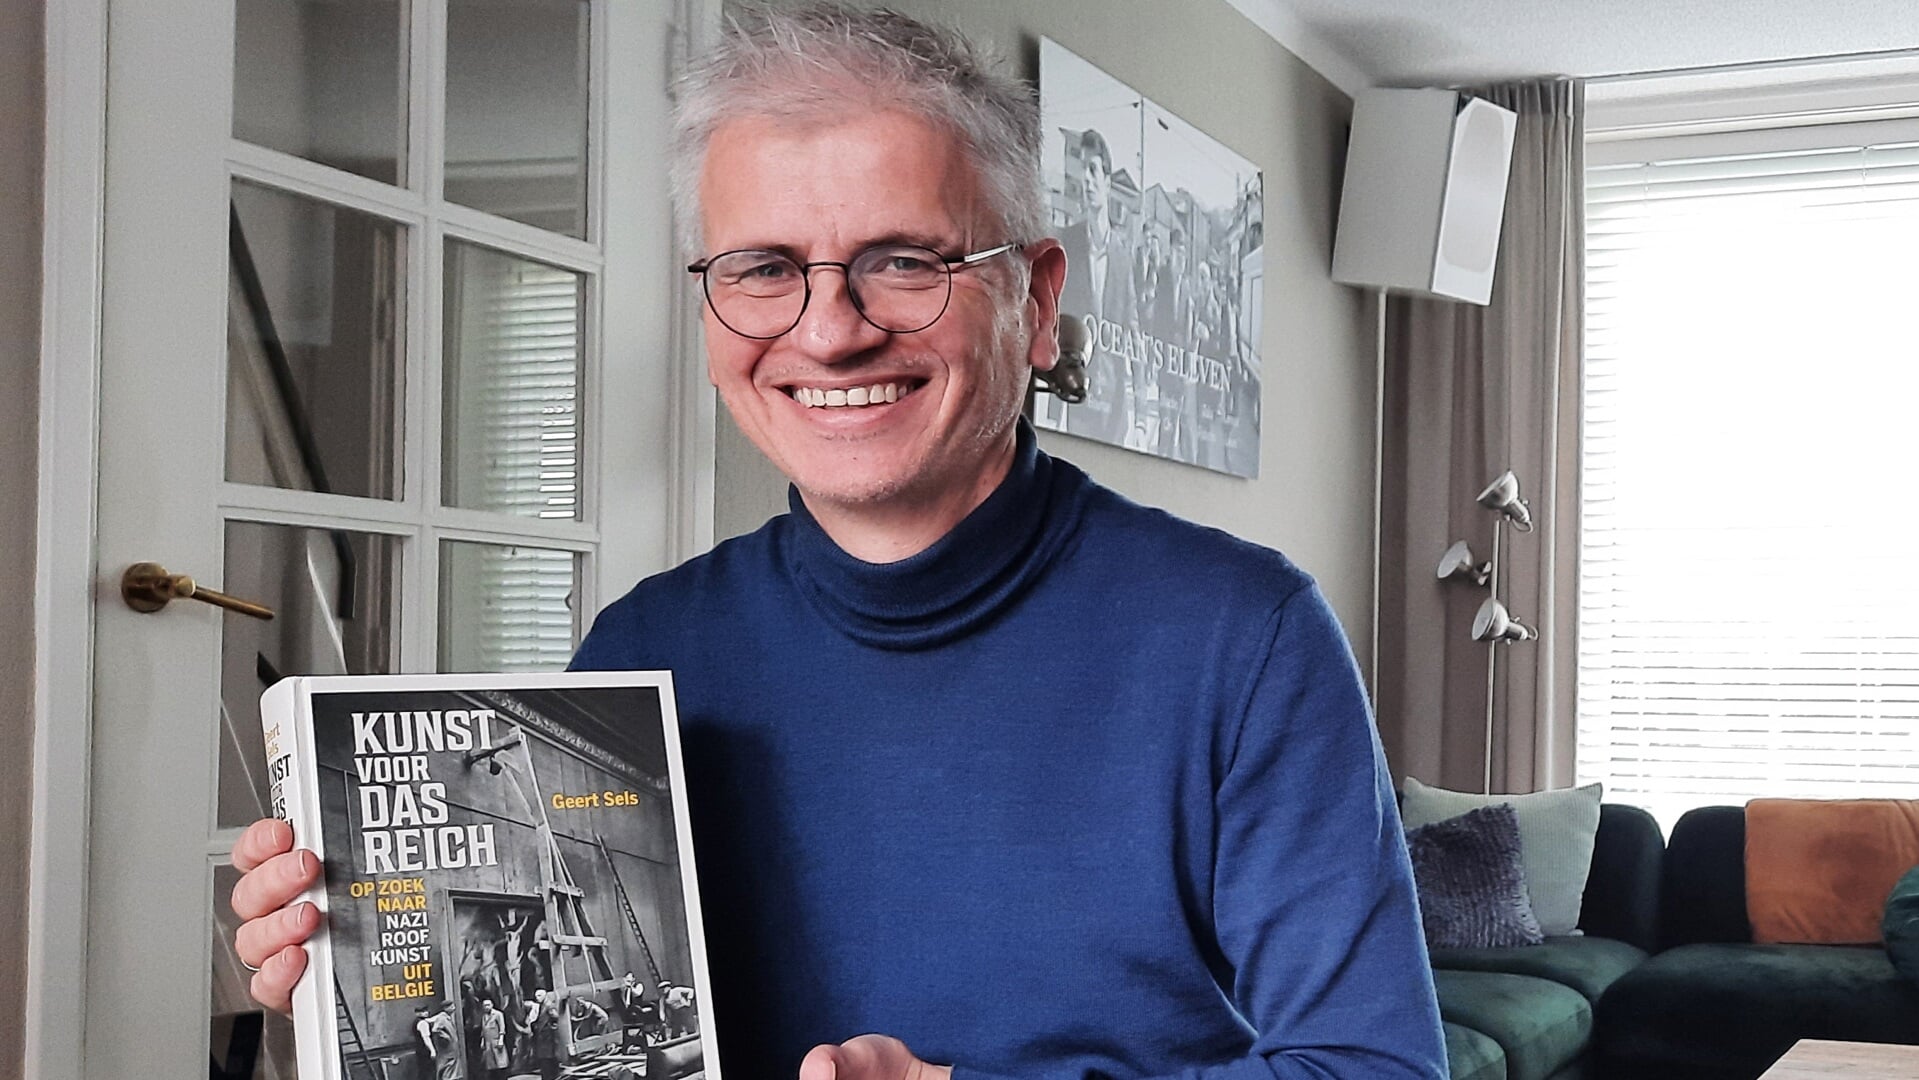 Rik Bouman laat het boek zien van Geert Sels met een onthullend verhaal over de kunstroof.